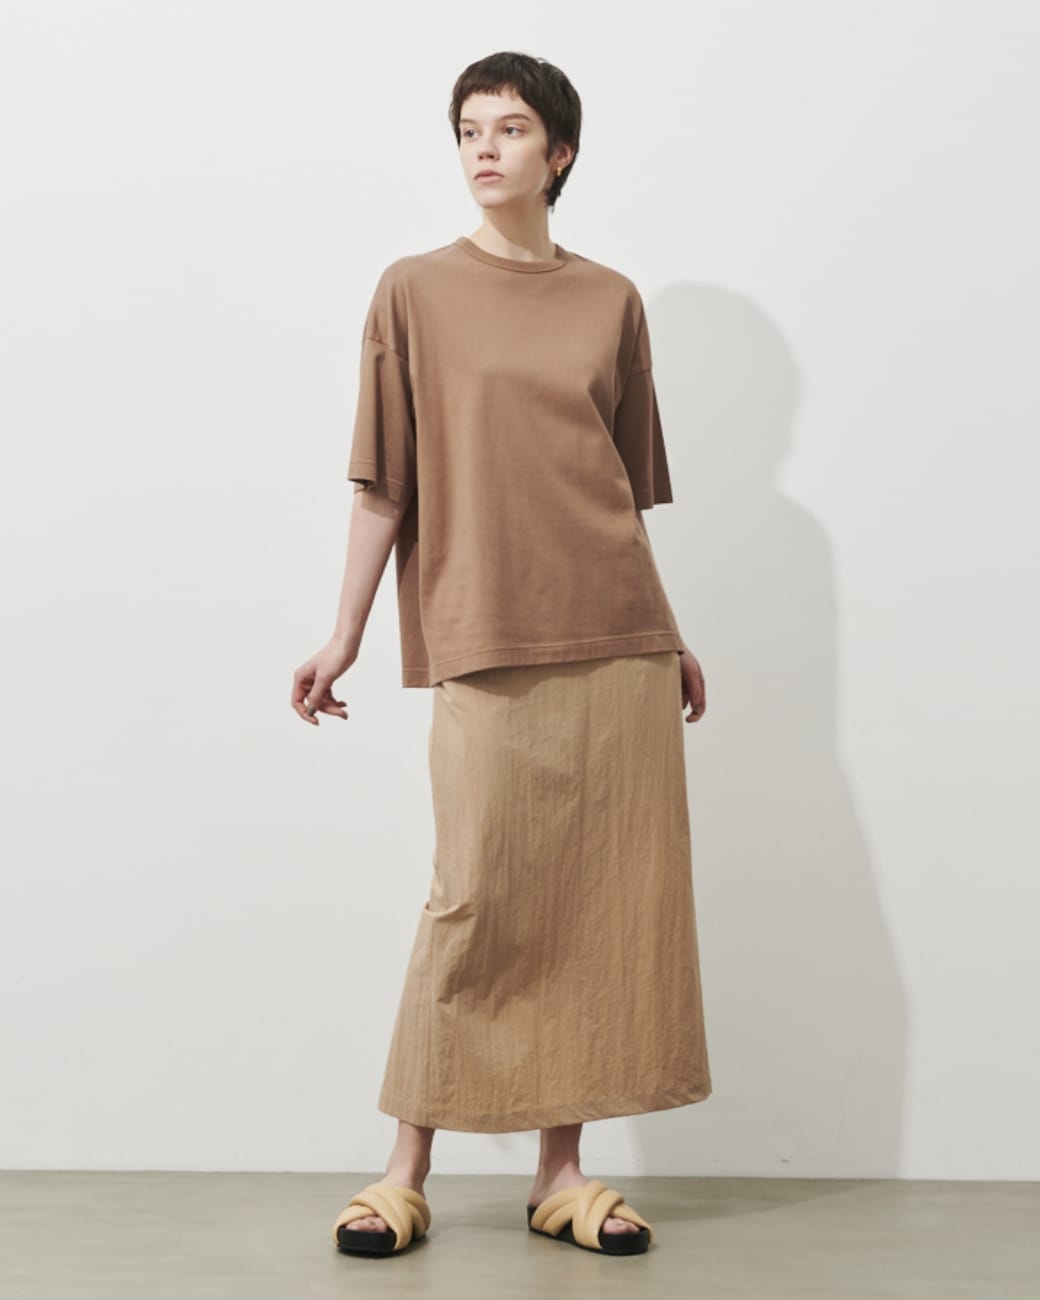 マルチファンクションTシャツ、ナイロンストレッチスカートを着用している女性の写真3